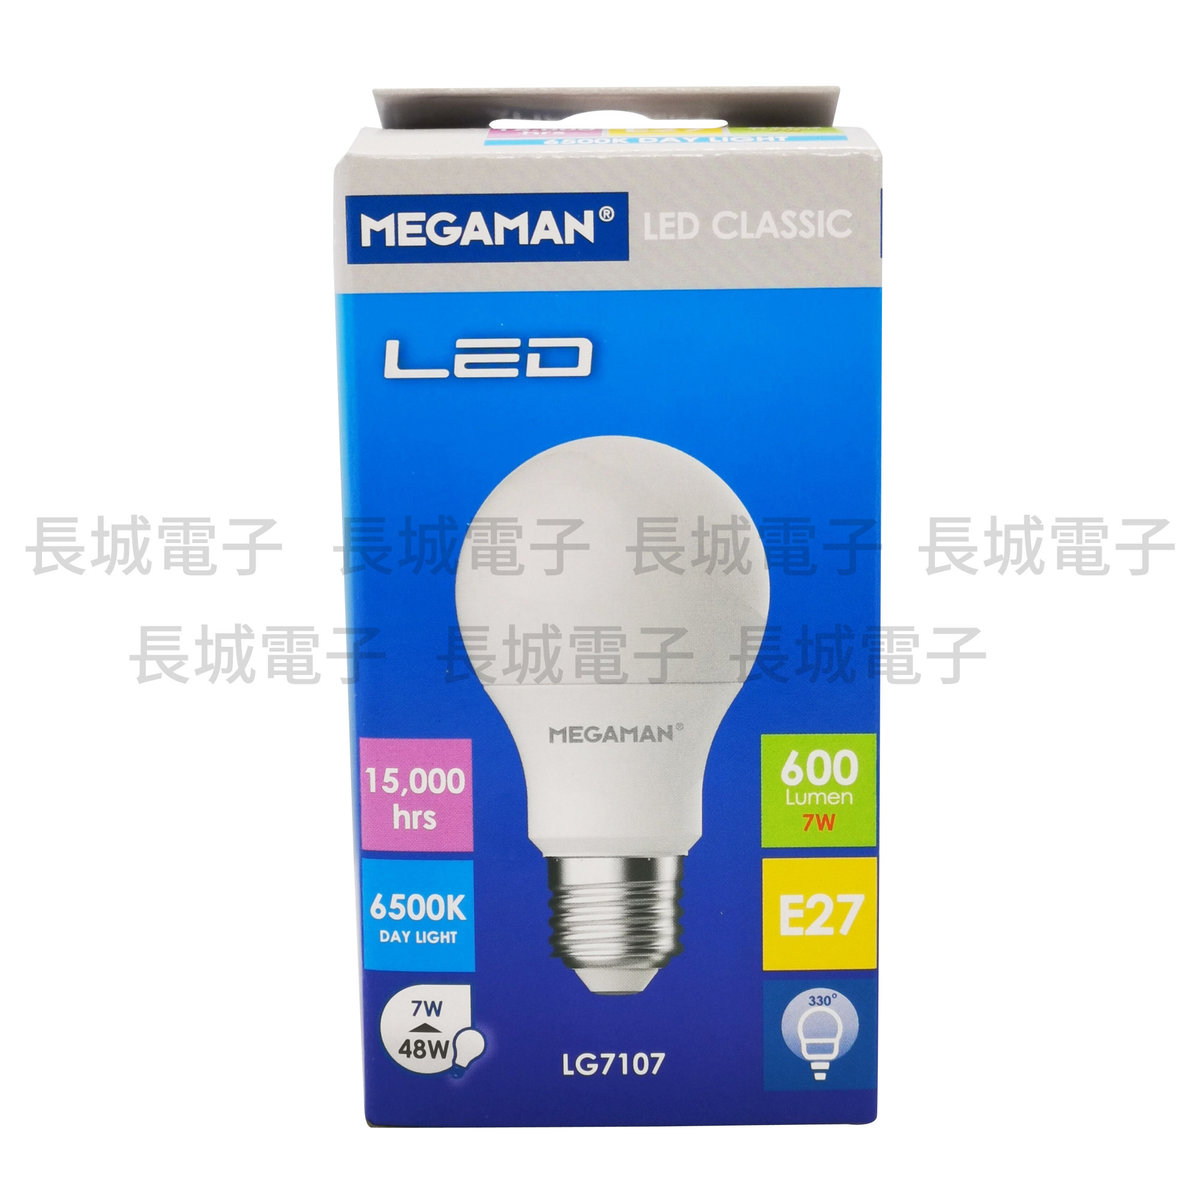 Hong Kong line LED lamp 7W white light E27 screw head 6500K eye protection screw head